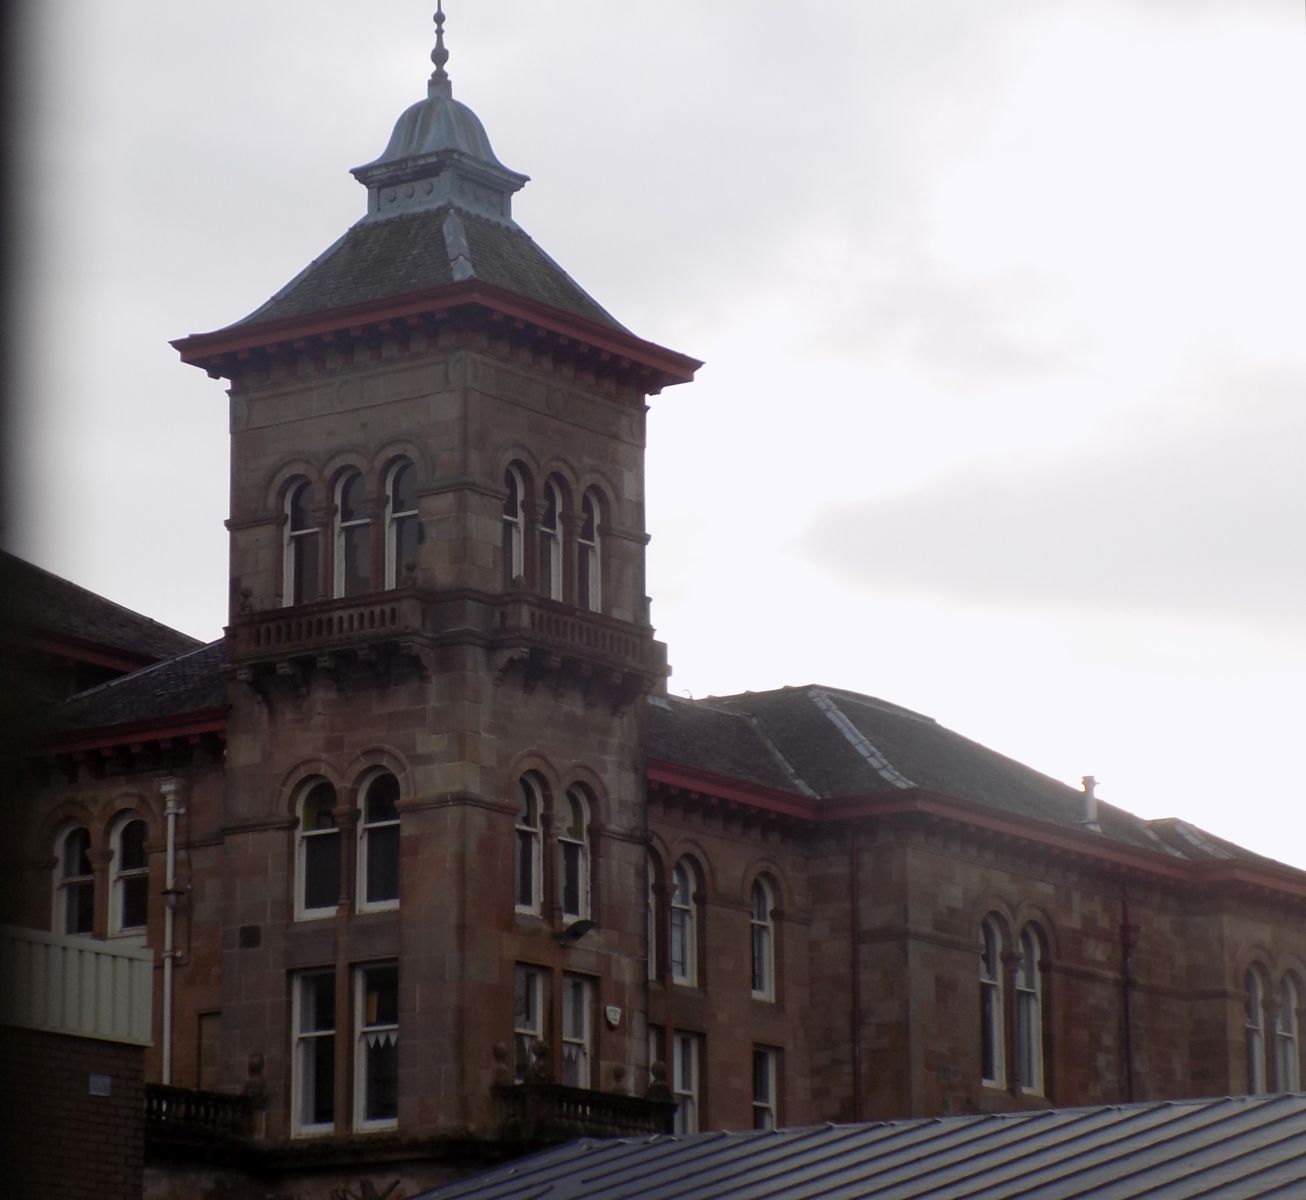 St Columba's School in Kilmacolm